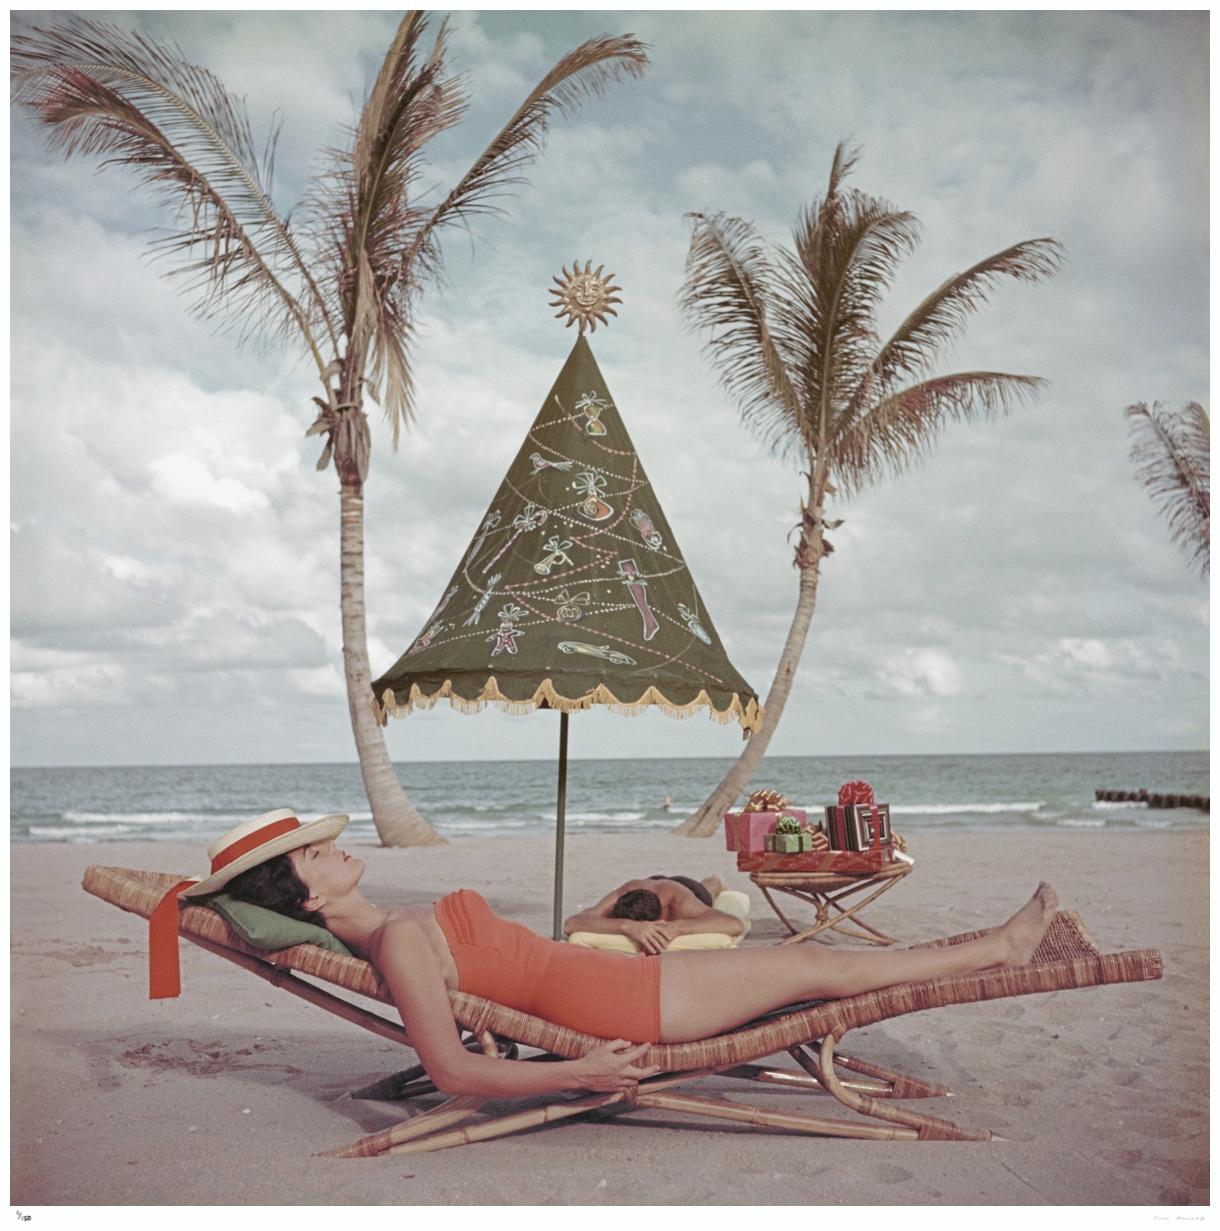 Slim Aarons 'Palm Beach Idyll' Nachlass gestempelte Ausgabe 
Ein Paar sonnt sich am Meer in Palm Beach Florida 1955 USA (Foto von Slim Aarons). 
Dieses Foto verkörpert den Reisestil und den Glamour der Reichen und Berühmten dieser Zeit, der von